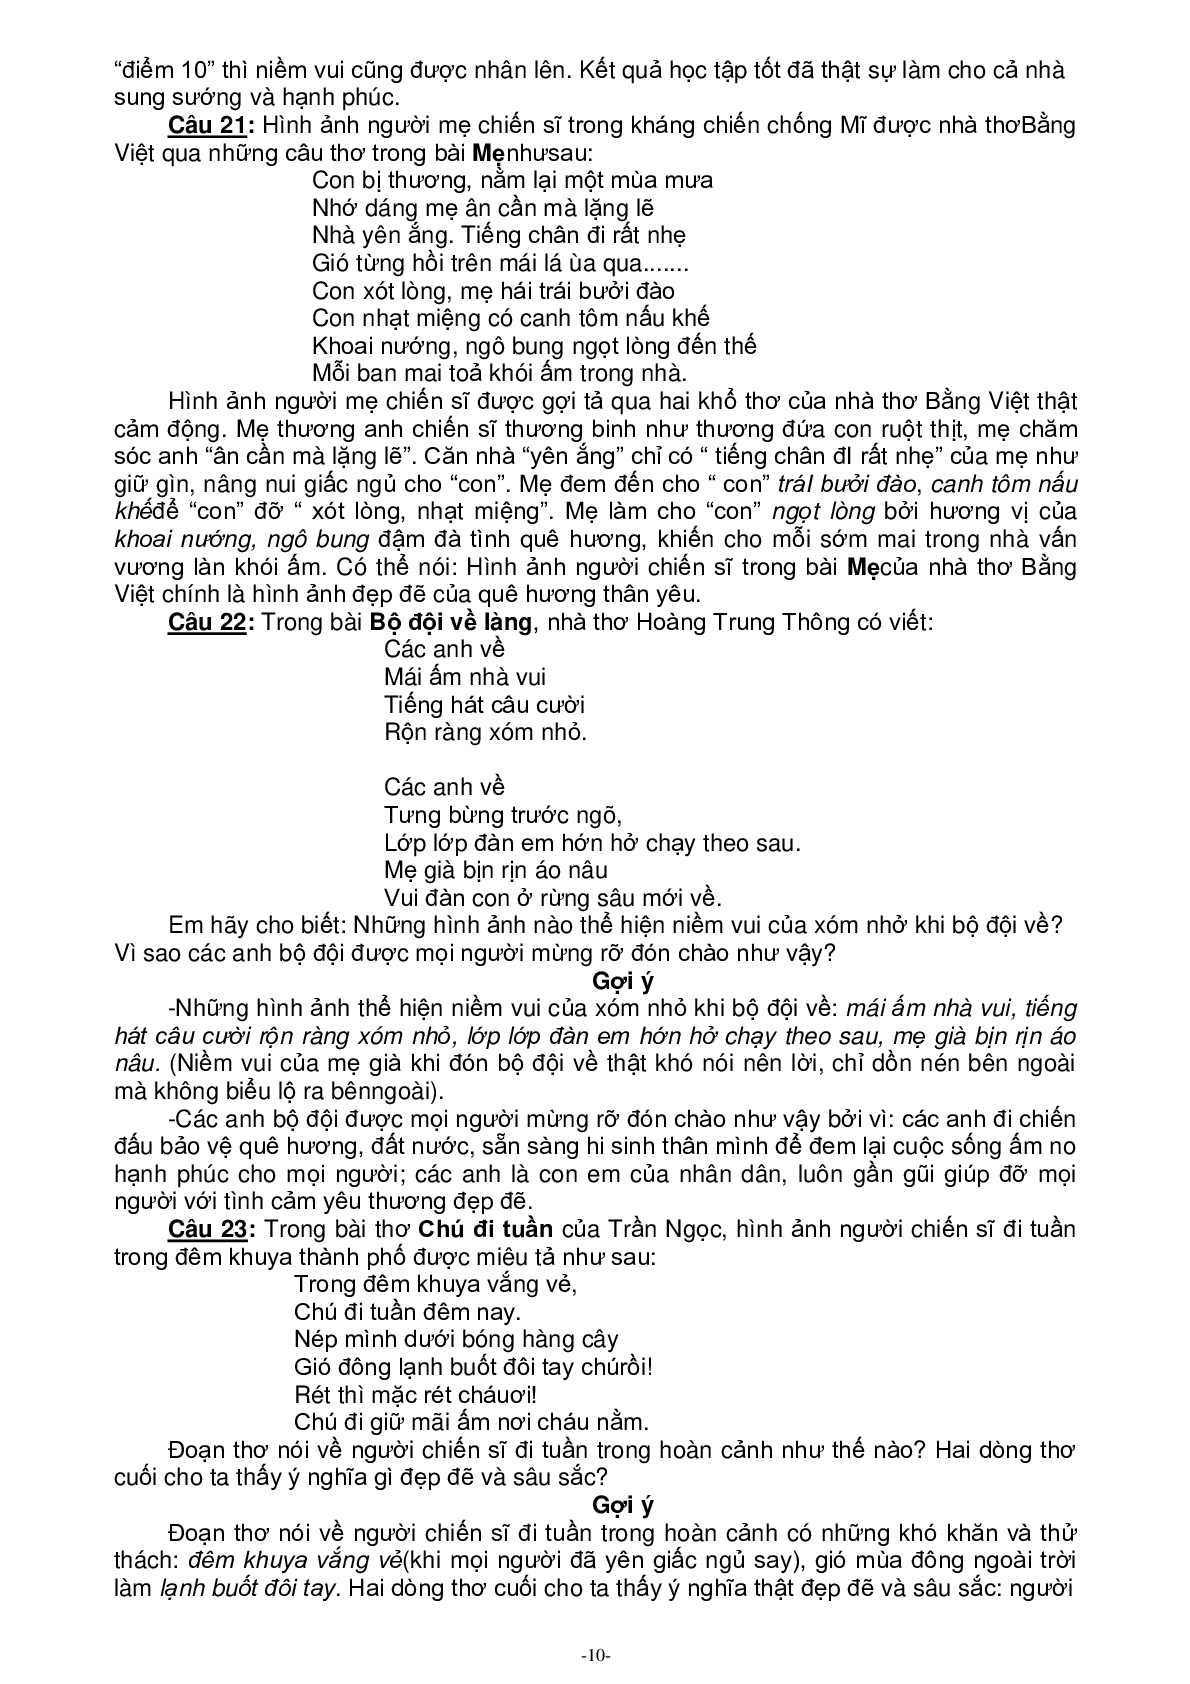 88 đề văn cảm thụ môn Tiếng Việt lớp 5 (trang 10)